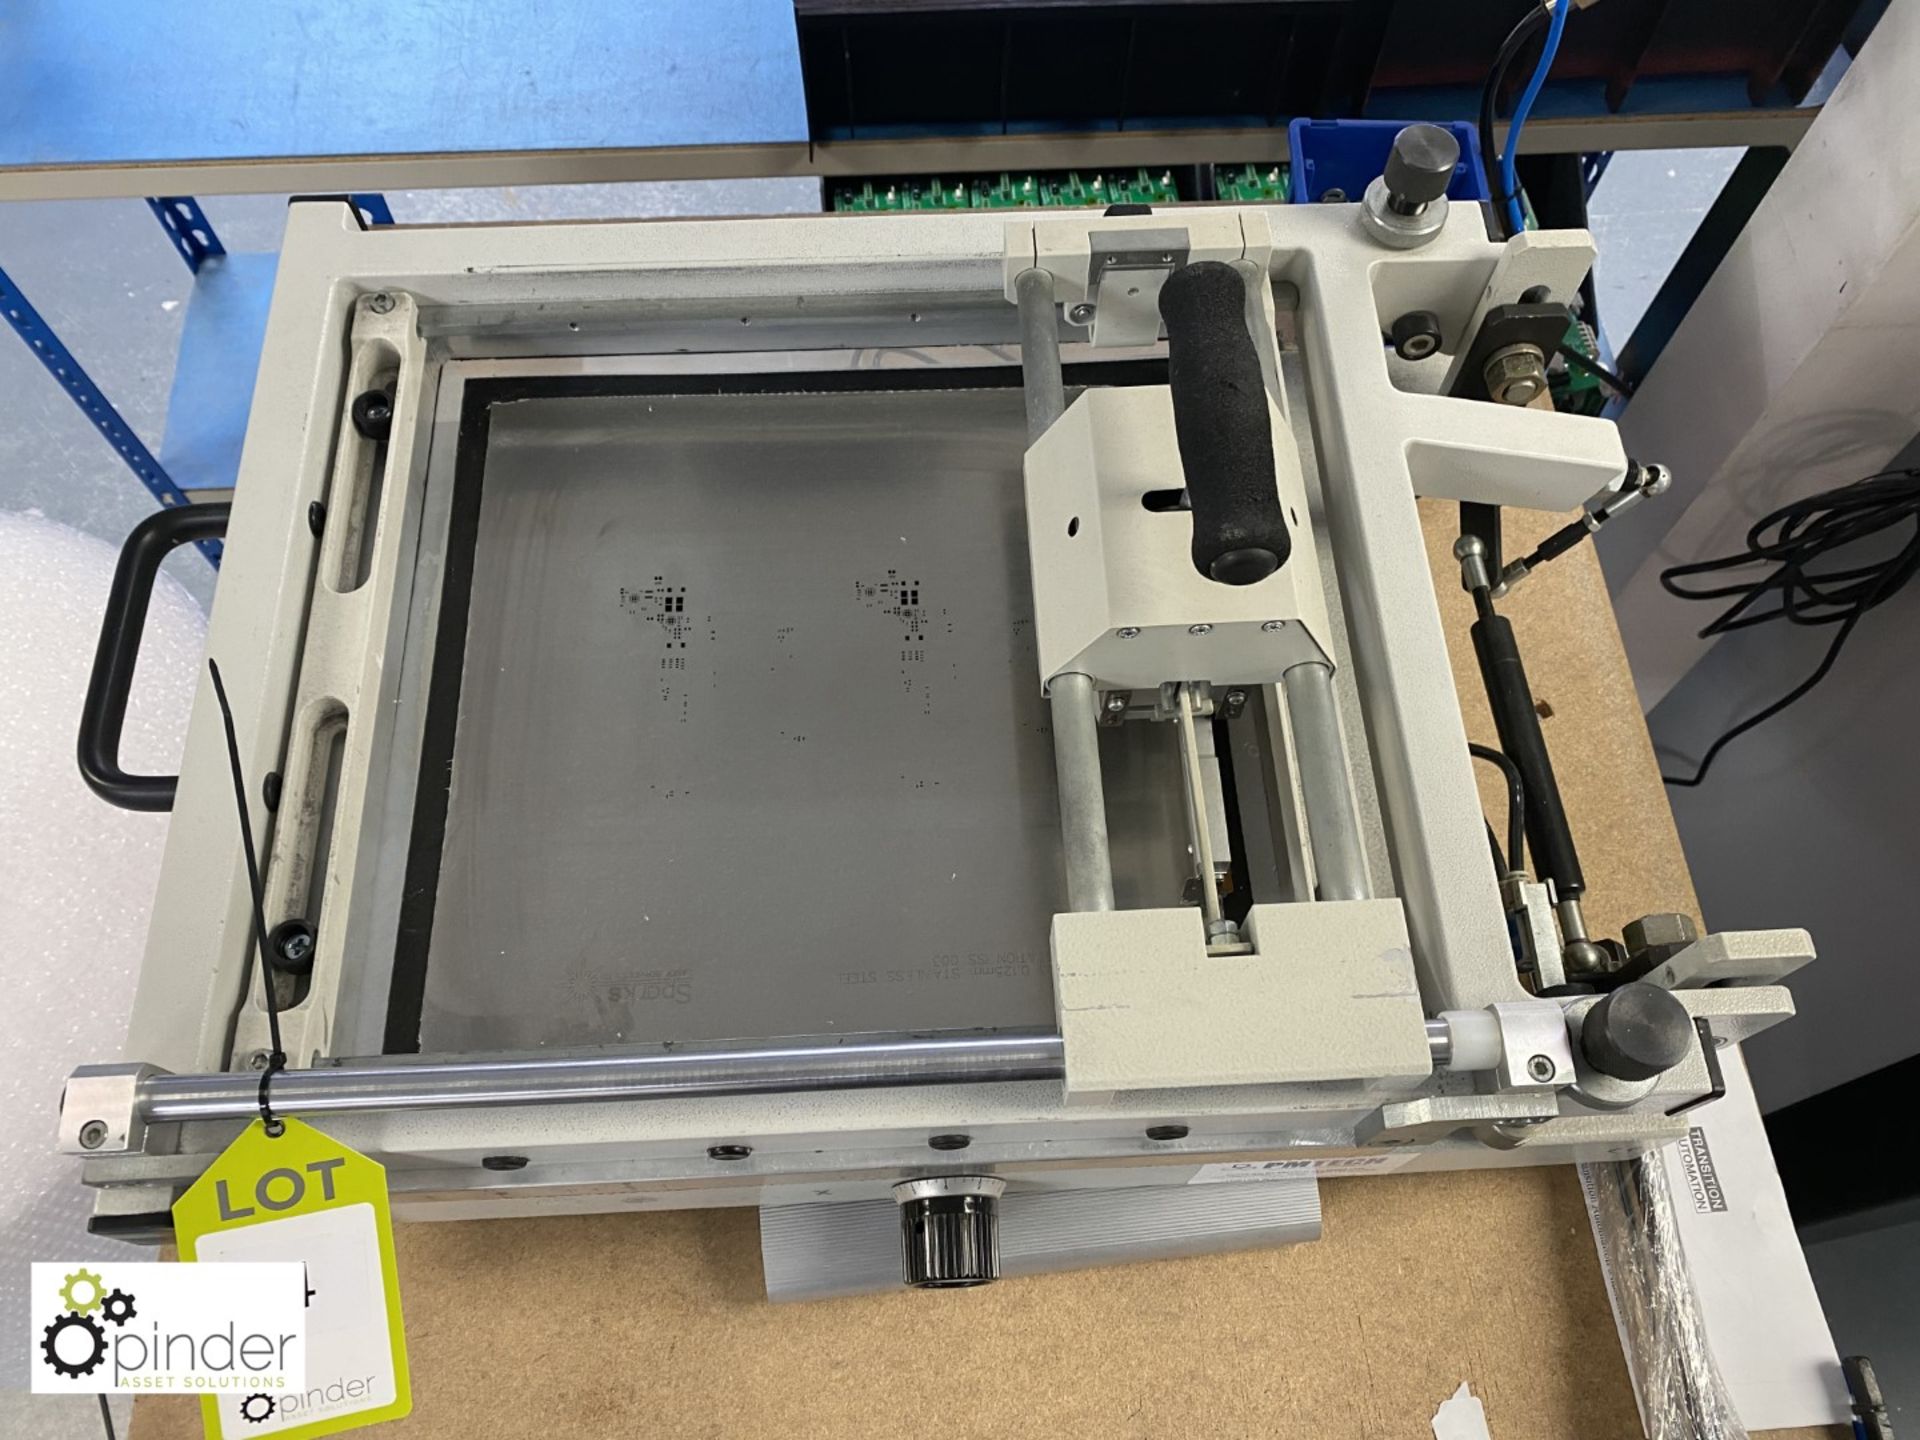 Essemtec SP-002M Circuit Board Printing Press - Image 2 of 5